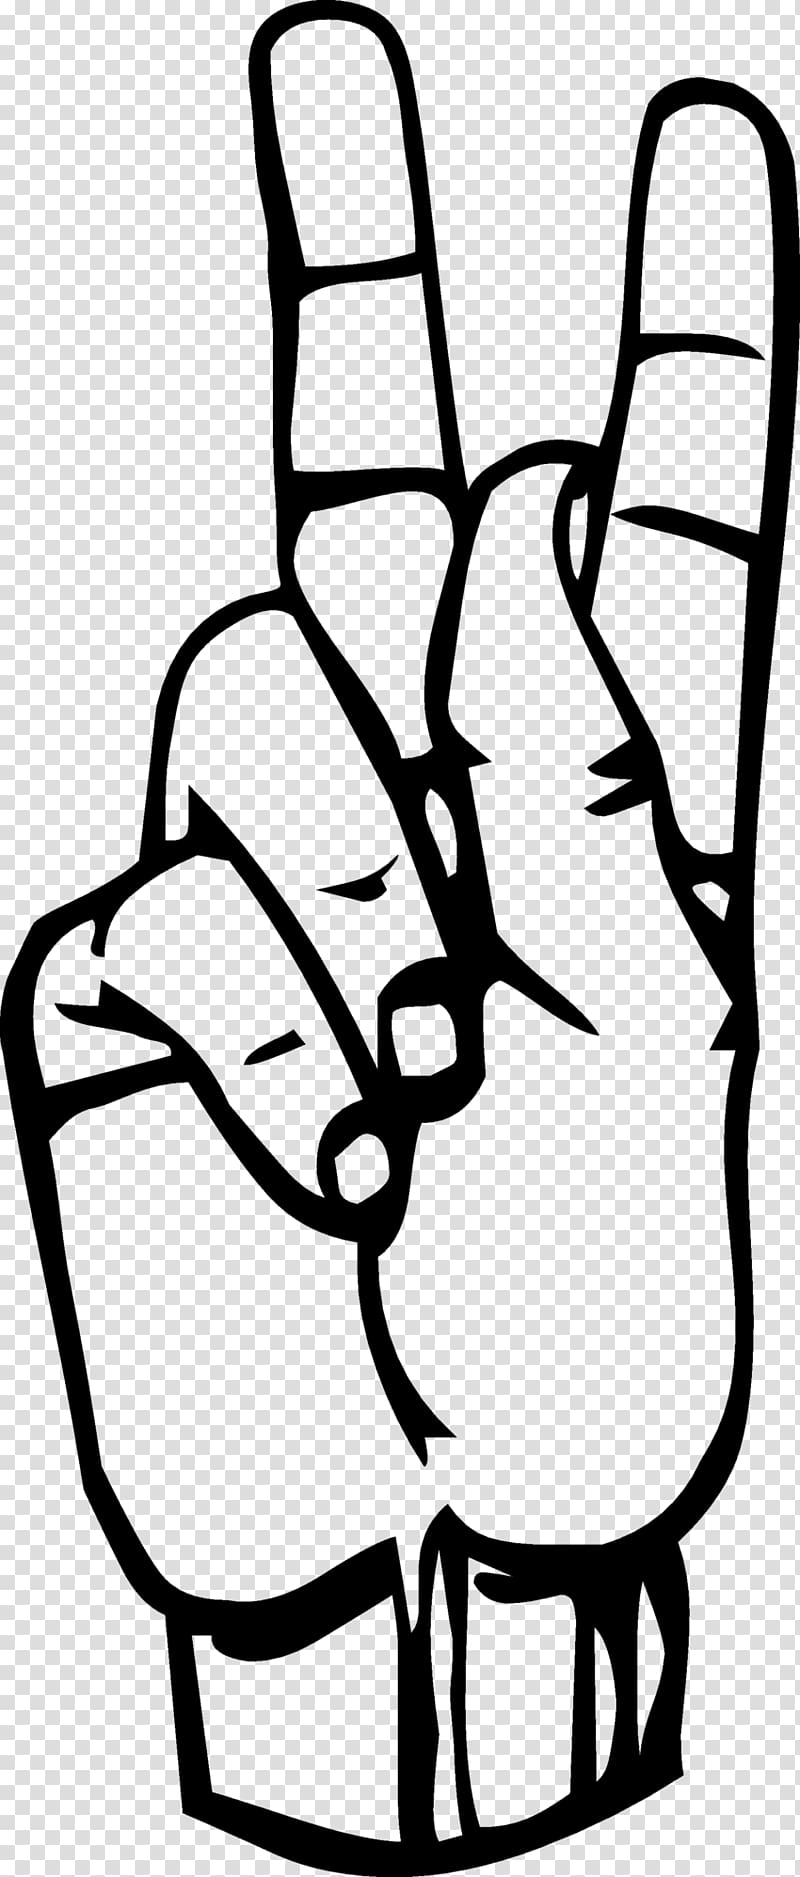 American Sign Language K Fingerspelling, finger transparent background PNG clipart